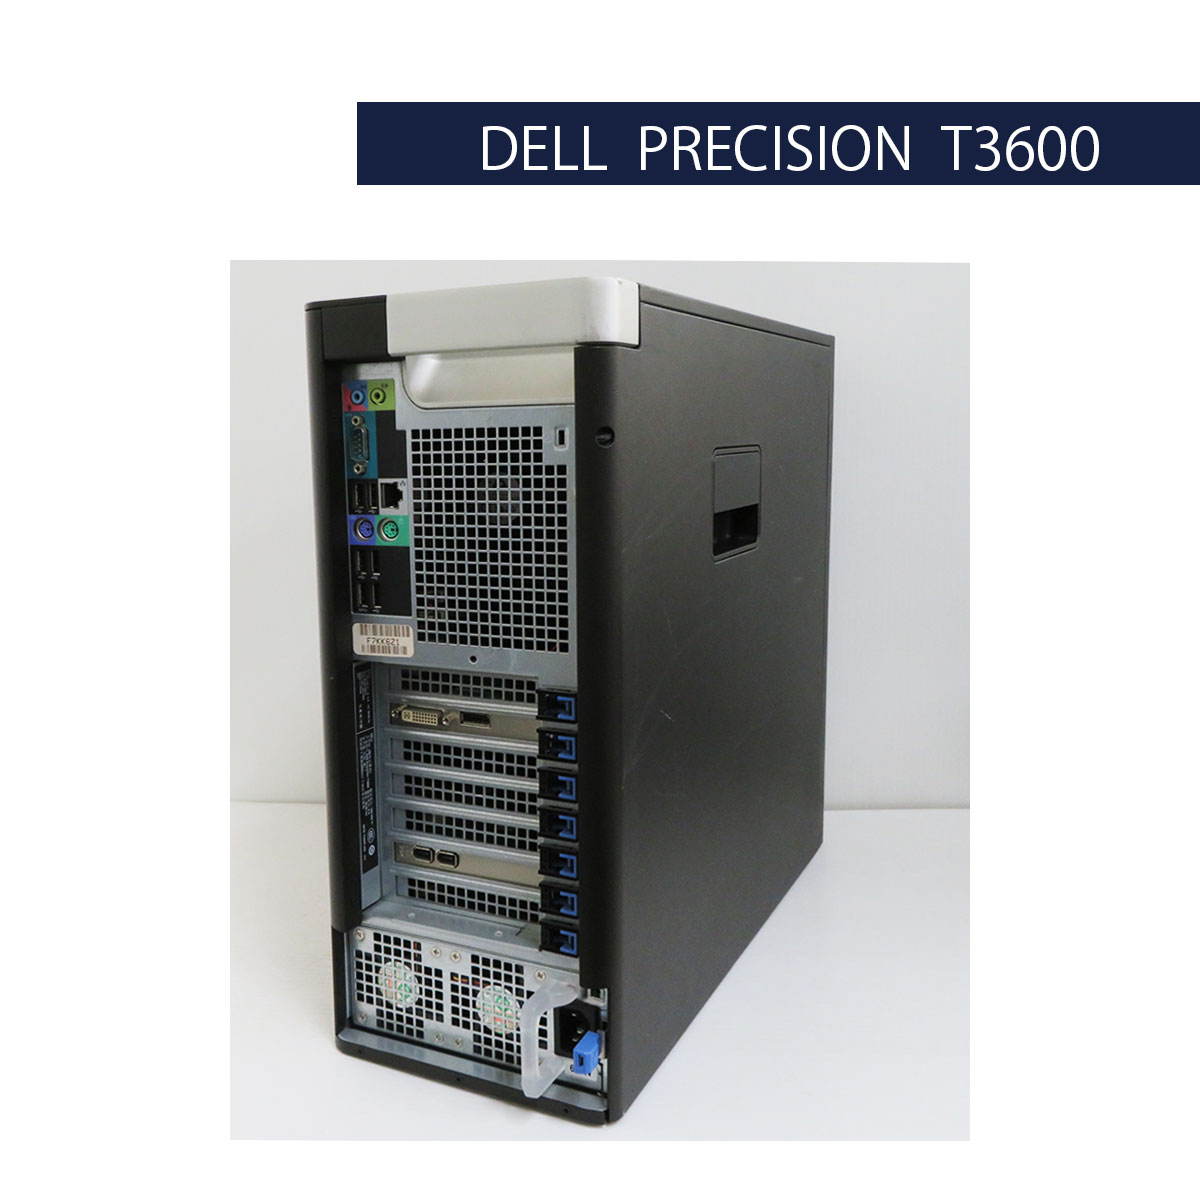 中古パソコンショップ 0799.jp / DELL Precision T3600 Xeon E5 1620